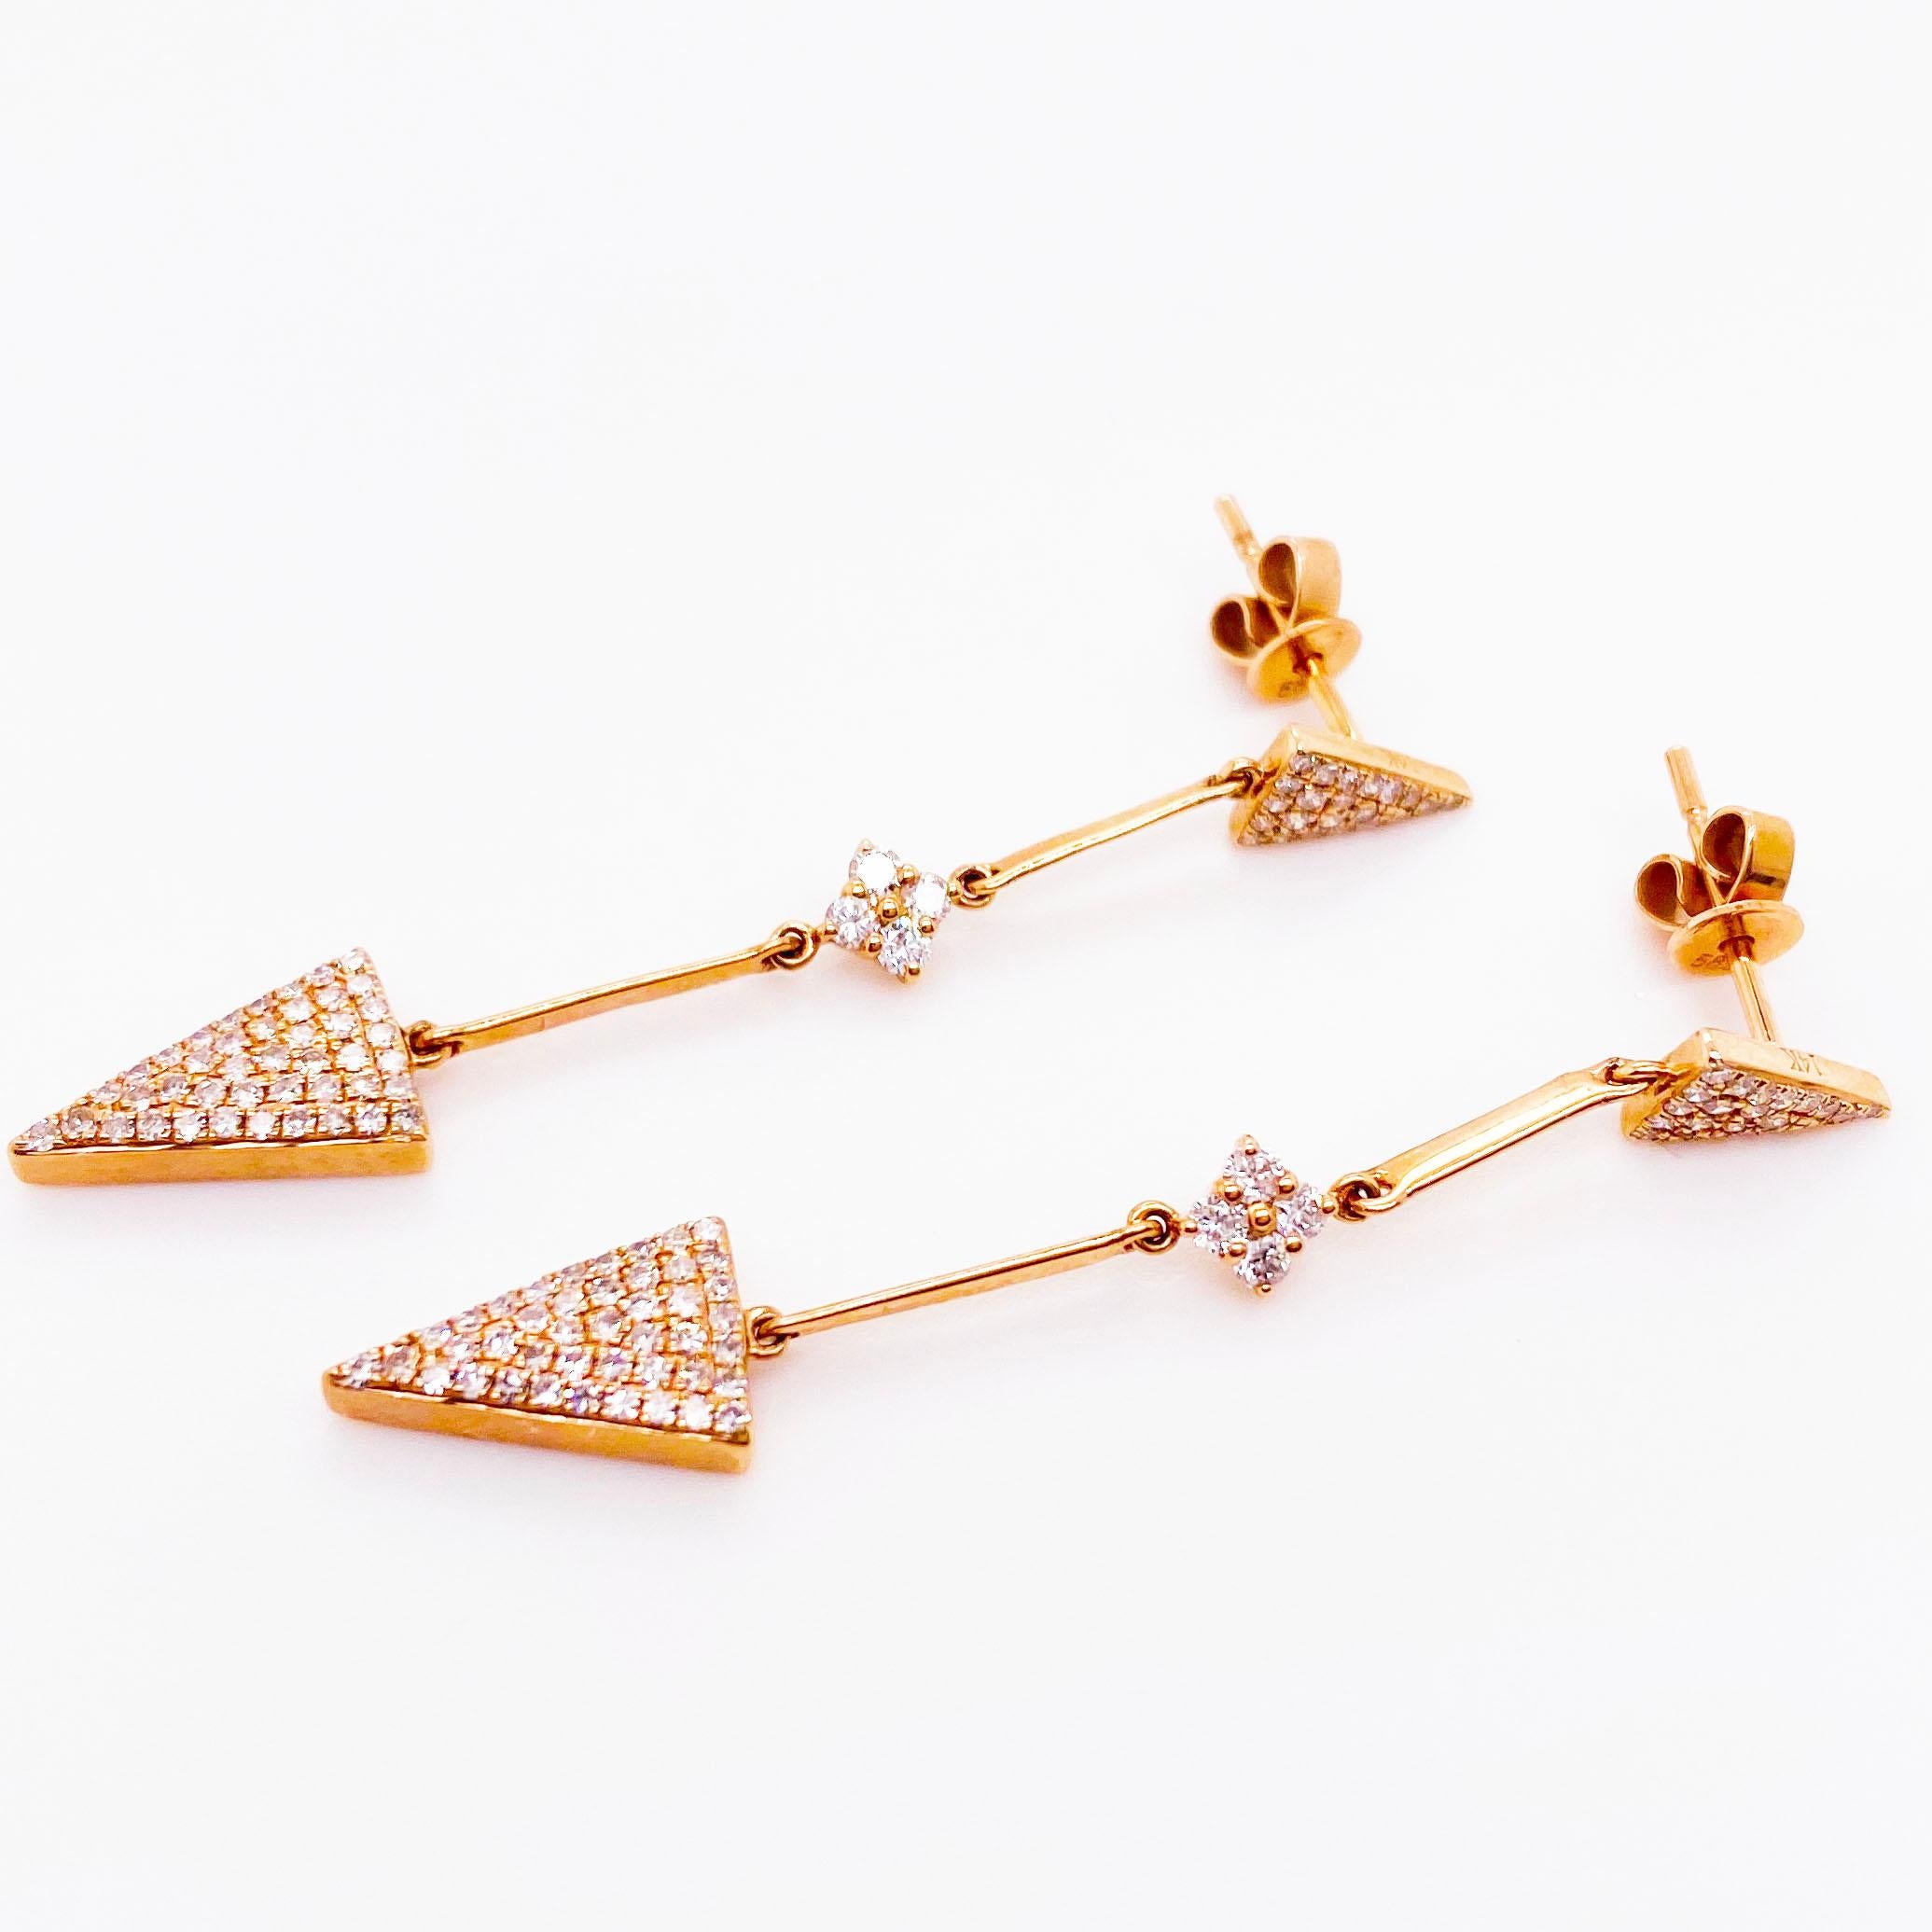 Round Cut Diamond Arrow Earring Dangles in 14 Karat Gold Pave Diamond Point Drop Earrings